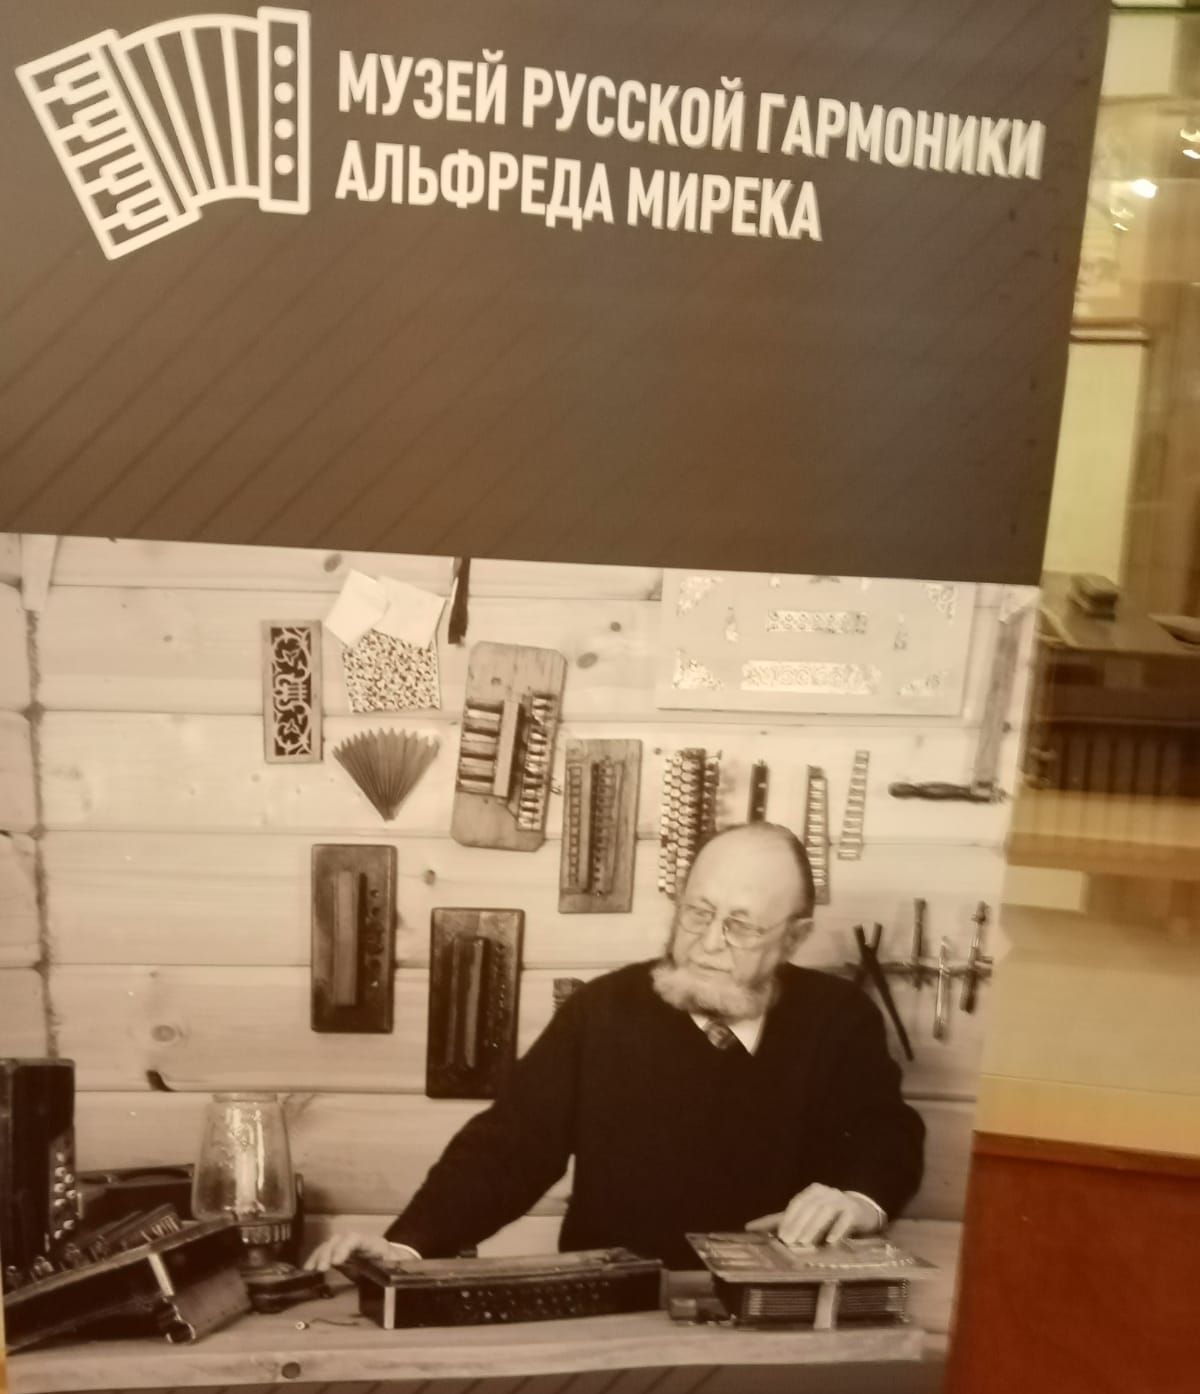 Члены МРО "Новокосино" МГО ВОИ посетили музей гармоники